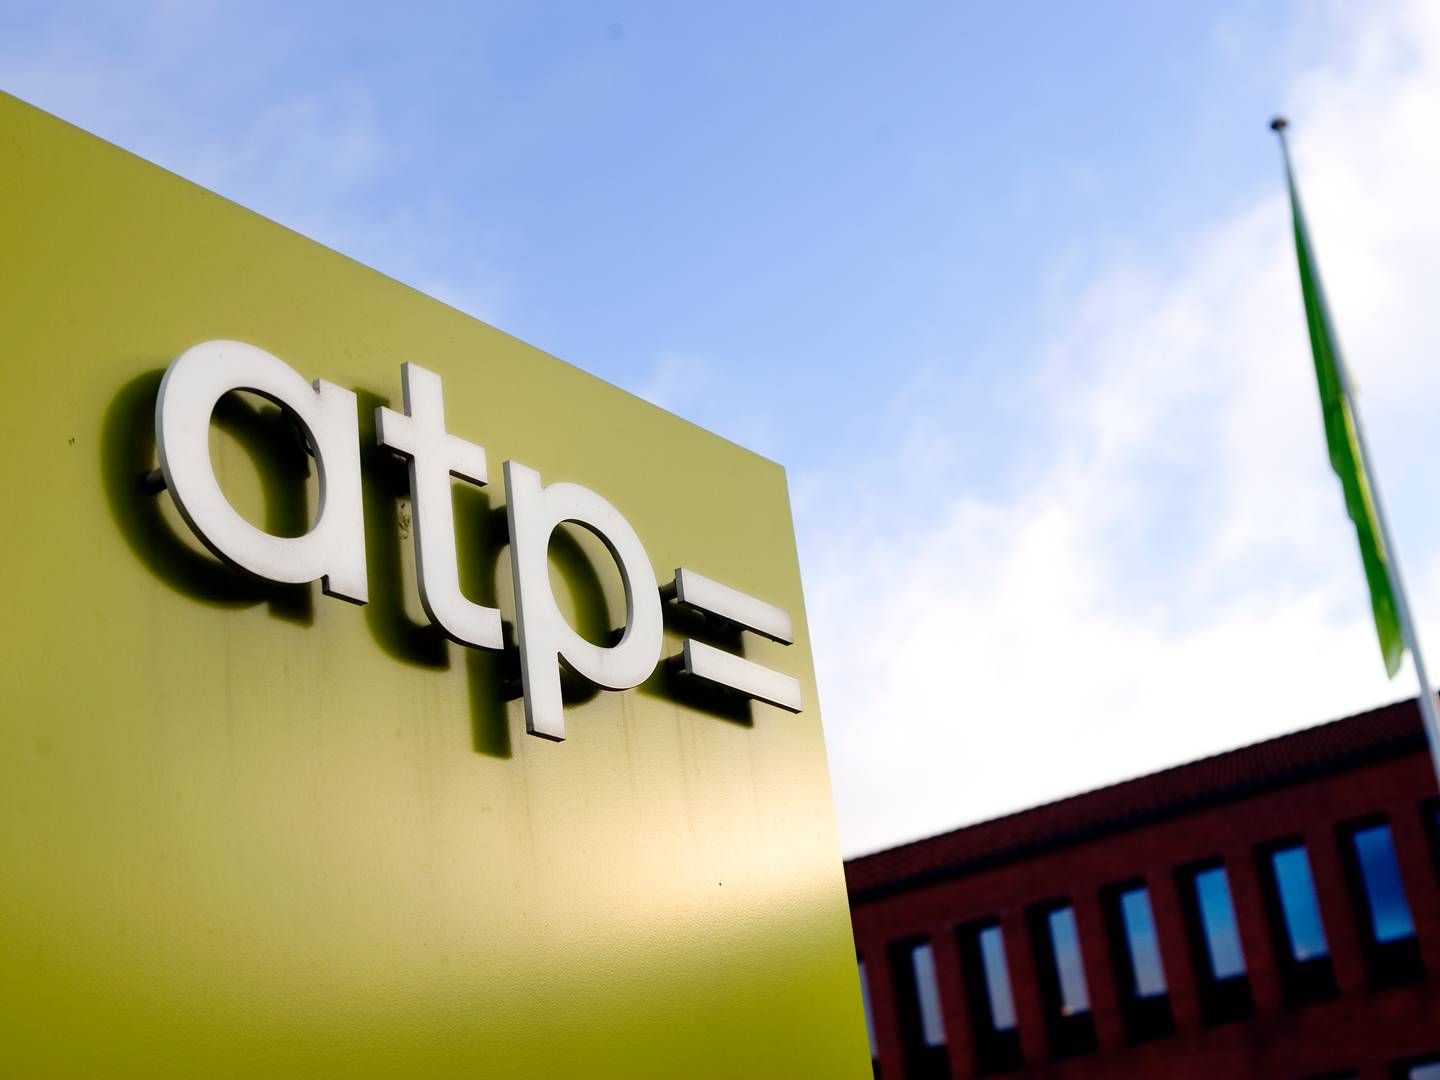 ATP, som har hovedsæde i Hillerød, blev etableret i 1964. | Foto: Thomas Borberg / Politiken / Ritzau Scanpix